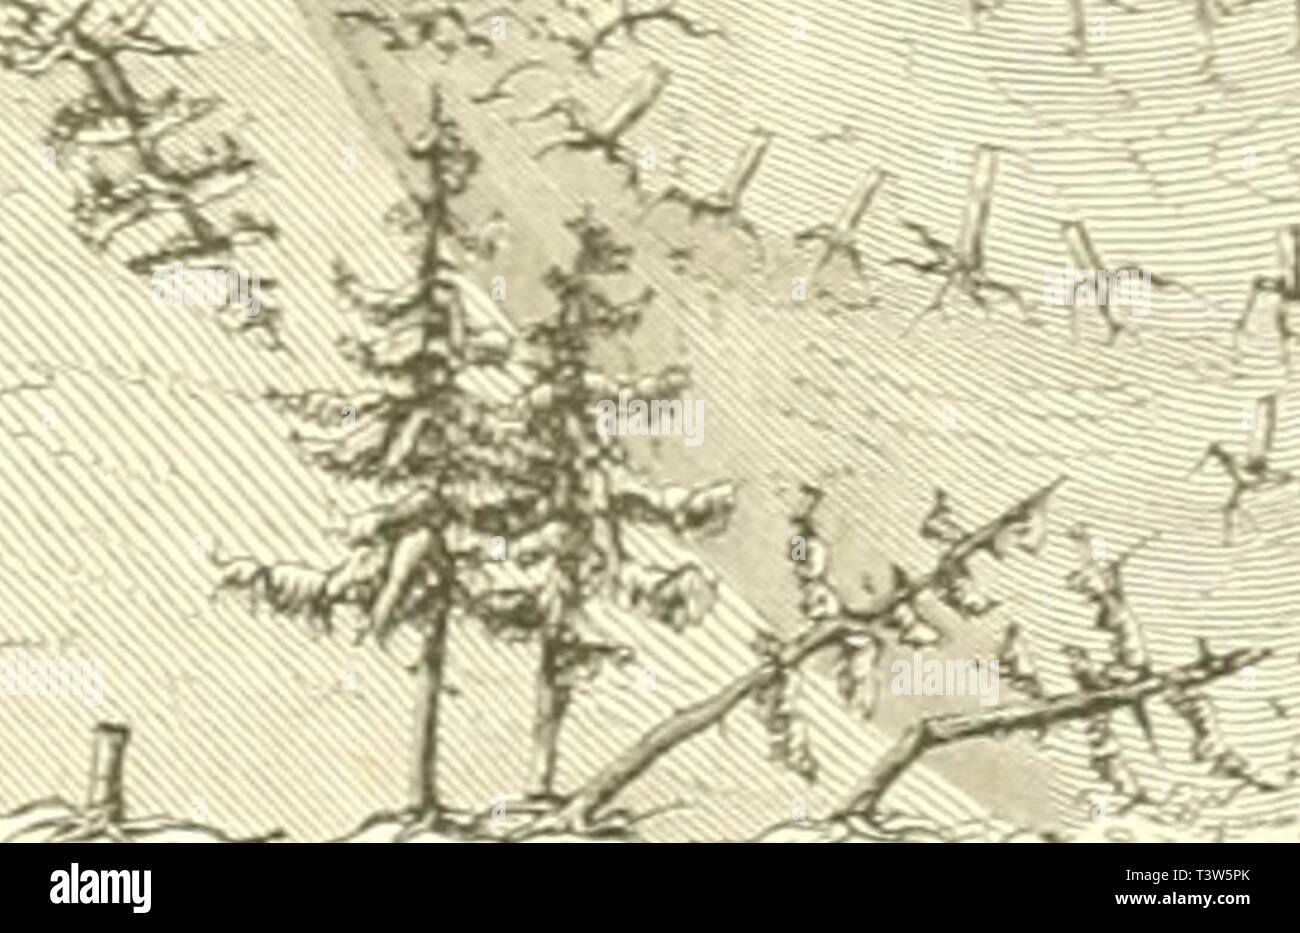 Archive image from page 238 of Die Natur (1852). Die Natur  dienatur19uleo Year: 1852  229 tcn SThf.Tc unb flmjfn Ã¼bcrqebfti, Â»rcllcn irit ncdi Me iStrantfladie in (ugcnfcbcin nehmen. Qi macht einen ci,;cnthÃ¼mtichen (Jinbrucf, wenn rcir faft &gt;iUenthalben auf irÃ¼mmer froren, metdie baÃ¤ 9Reer auctcnjcrfen ()at. JÃ¼if tem reeipen Sanbe finben iric Â»echfctSreeife balb oljfloben unb ?.uten, batb Â®d)iif6; planfen unb Salfcn, hier unb bpct StÃ¼cfe oon OTaften ober anbern Schiffttjeilen, an rcetd)cn nod) alte4 (Slfen unb Sauroet! befeftigt ijl. gbenfo fef)fn mir nn Â»etfd)ie= gen 5Ã¶etth. 9? Stock Photo